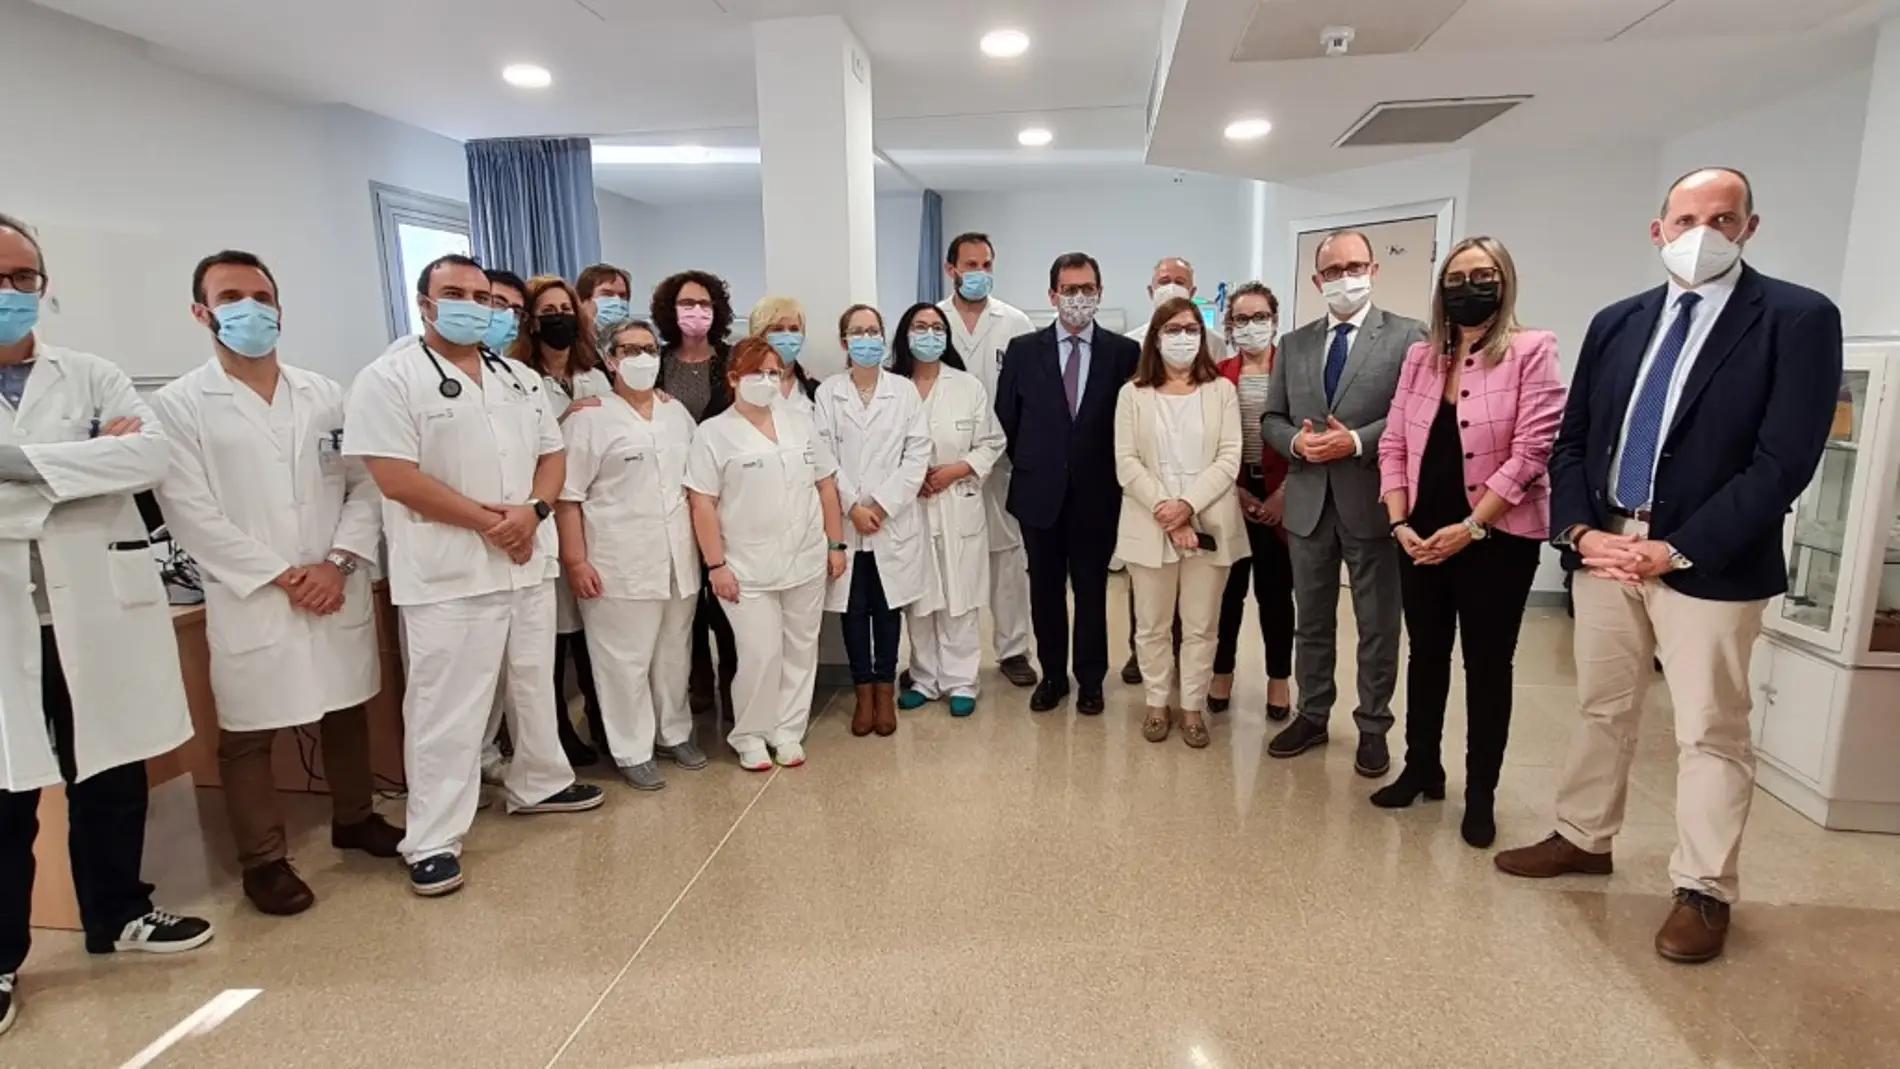 Nuevos pasos para la unidad de hemodialisis en Talavera